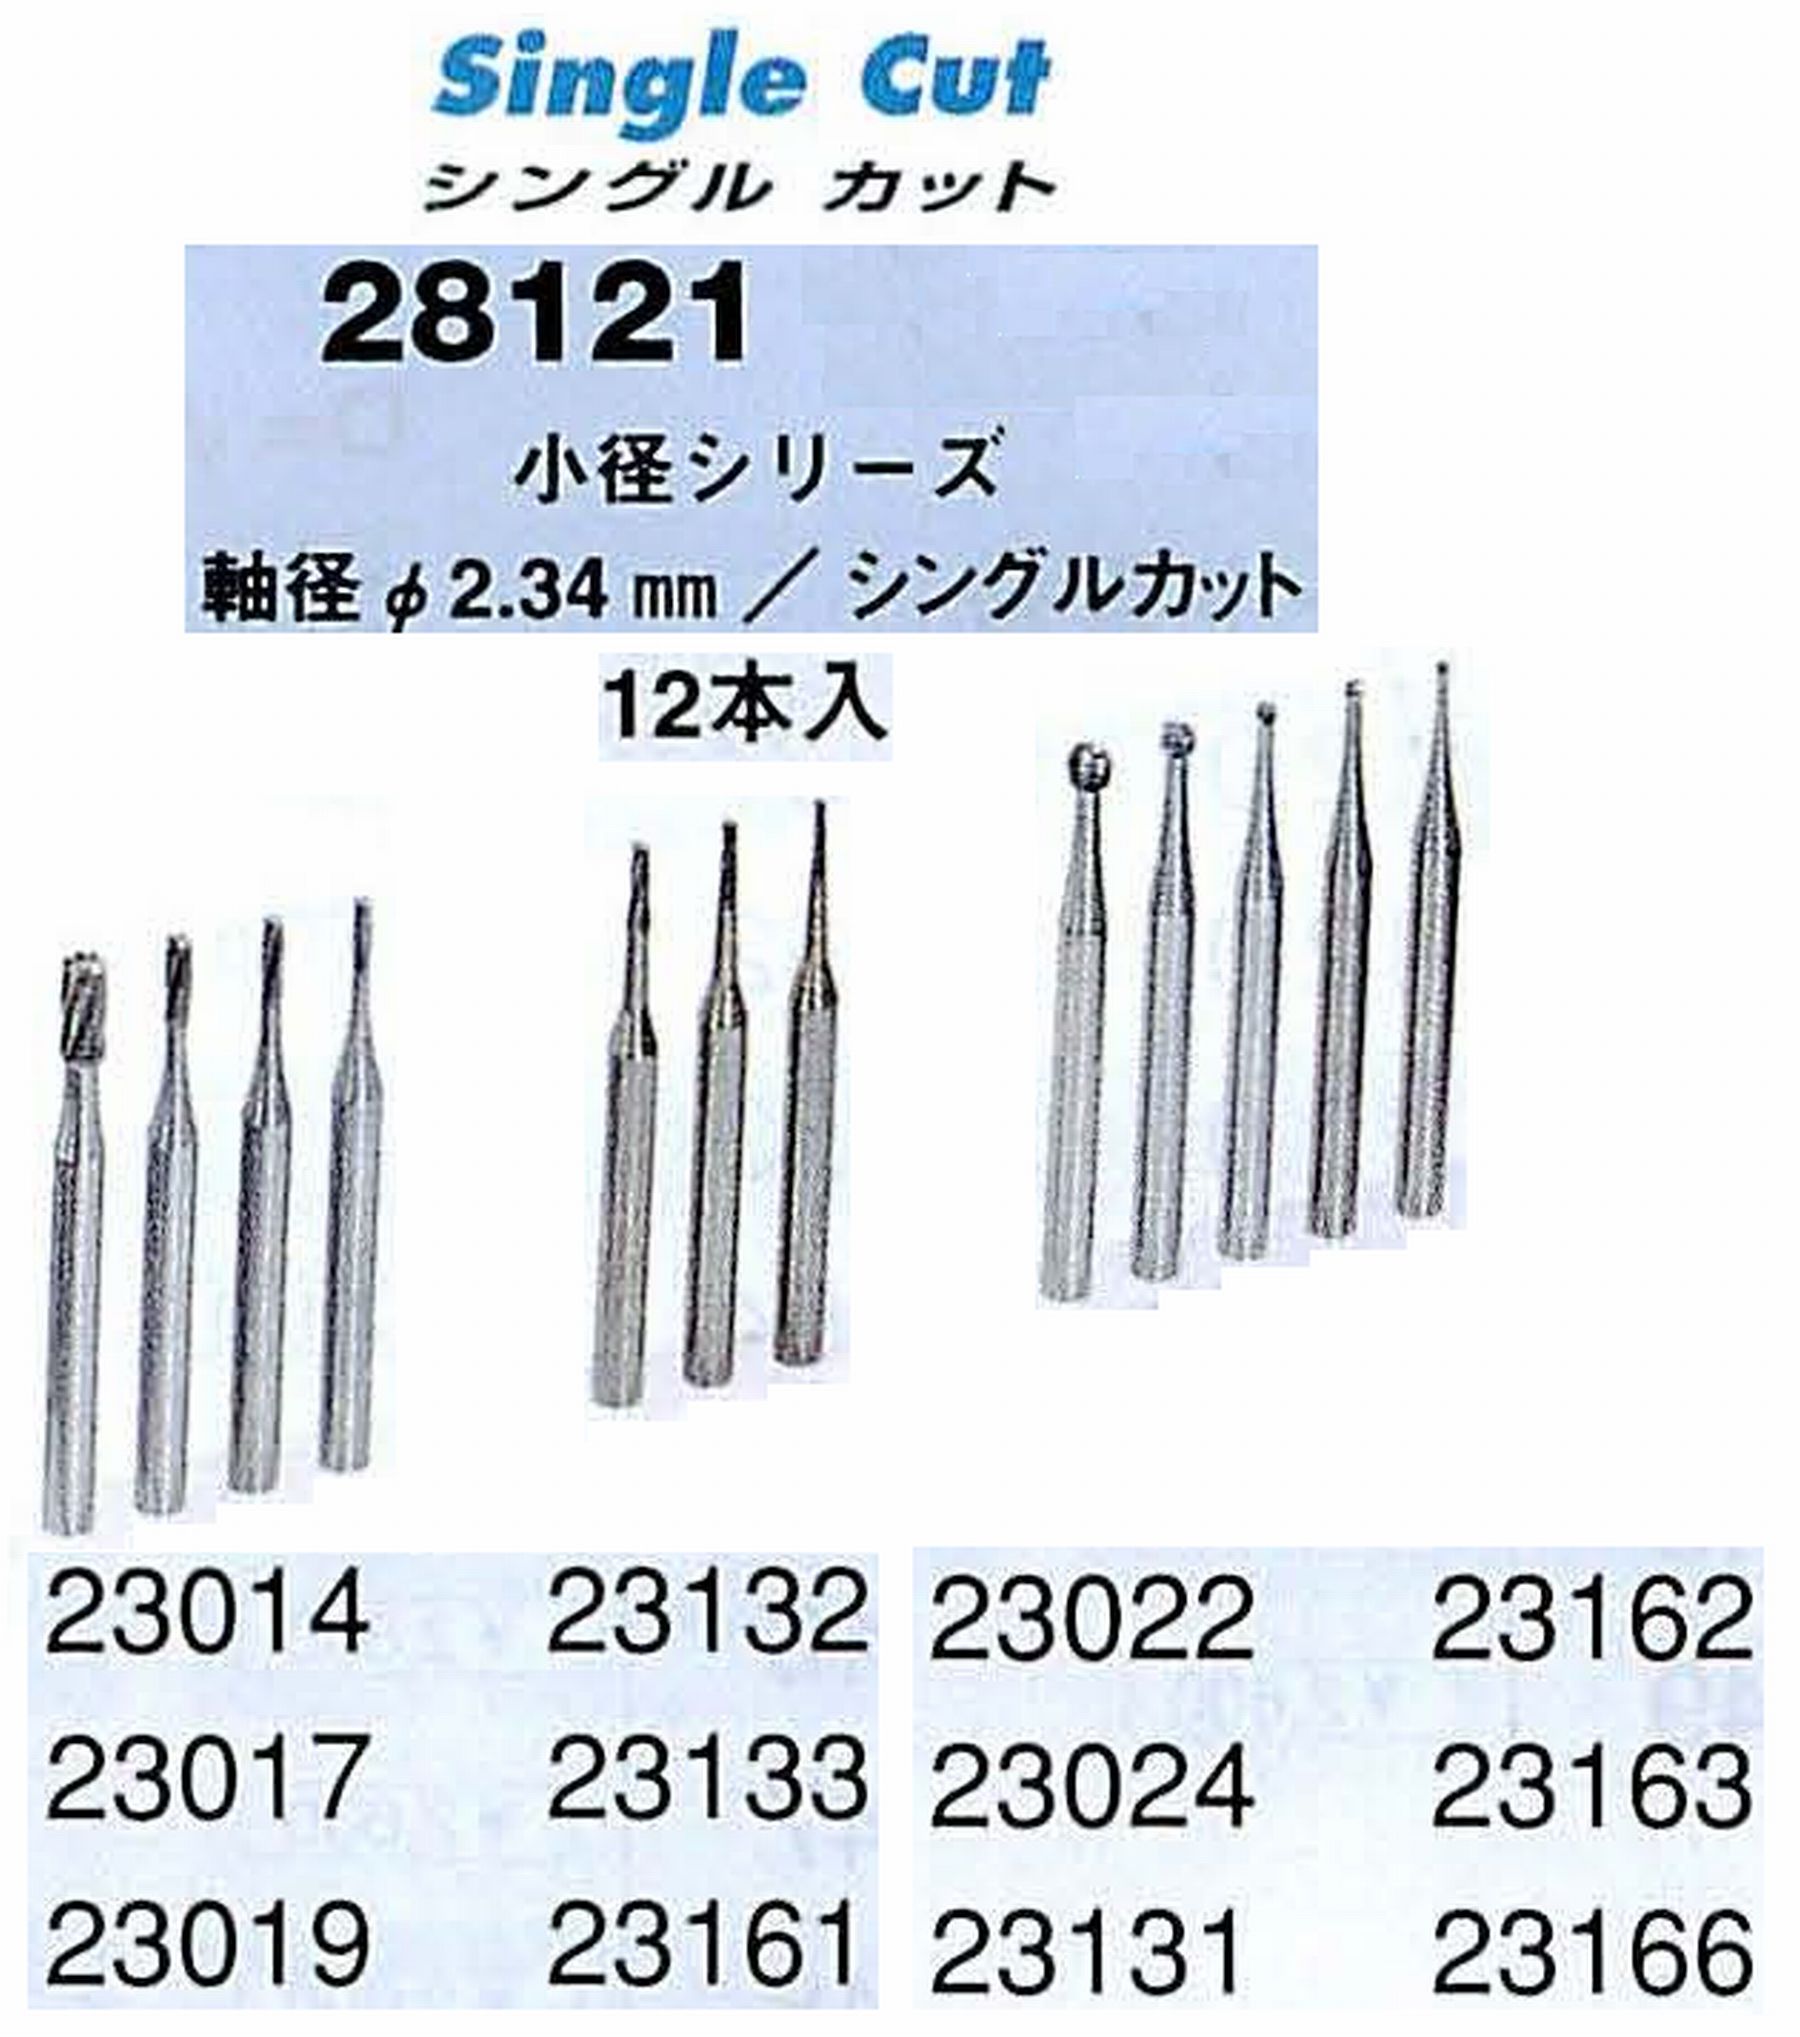 ナカニシ/NAKANISHI 超硬カッター アソートセット 軸径(シャンク)φ2.34mm 28121